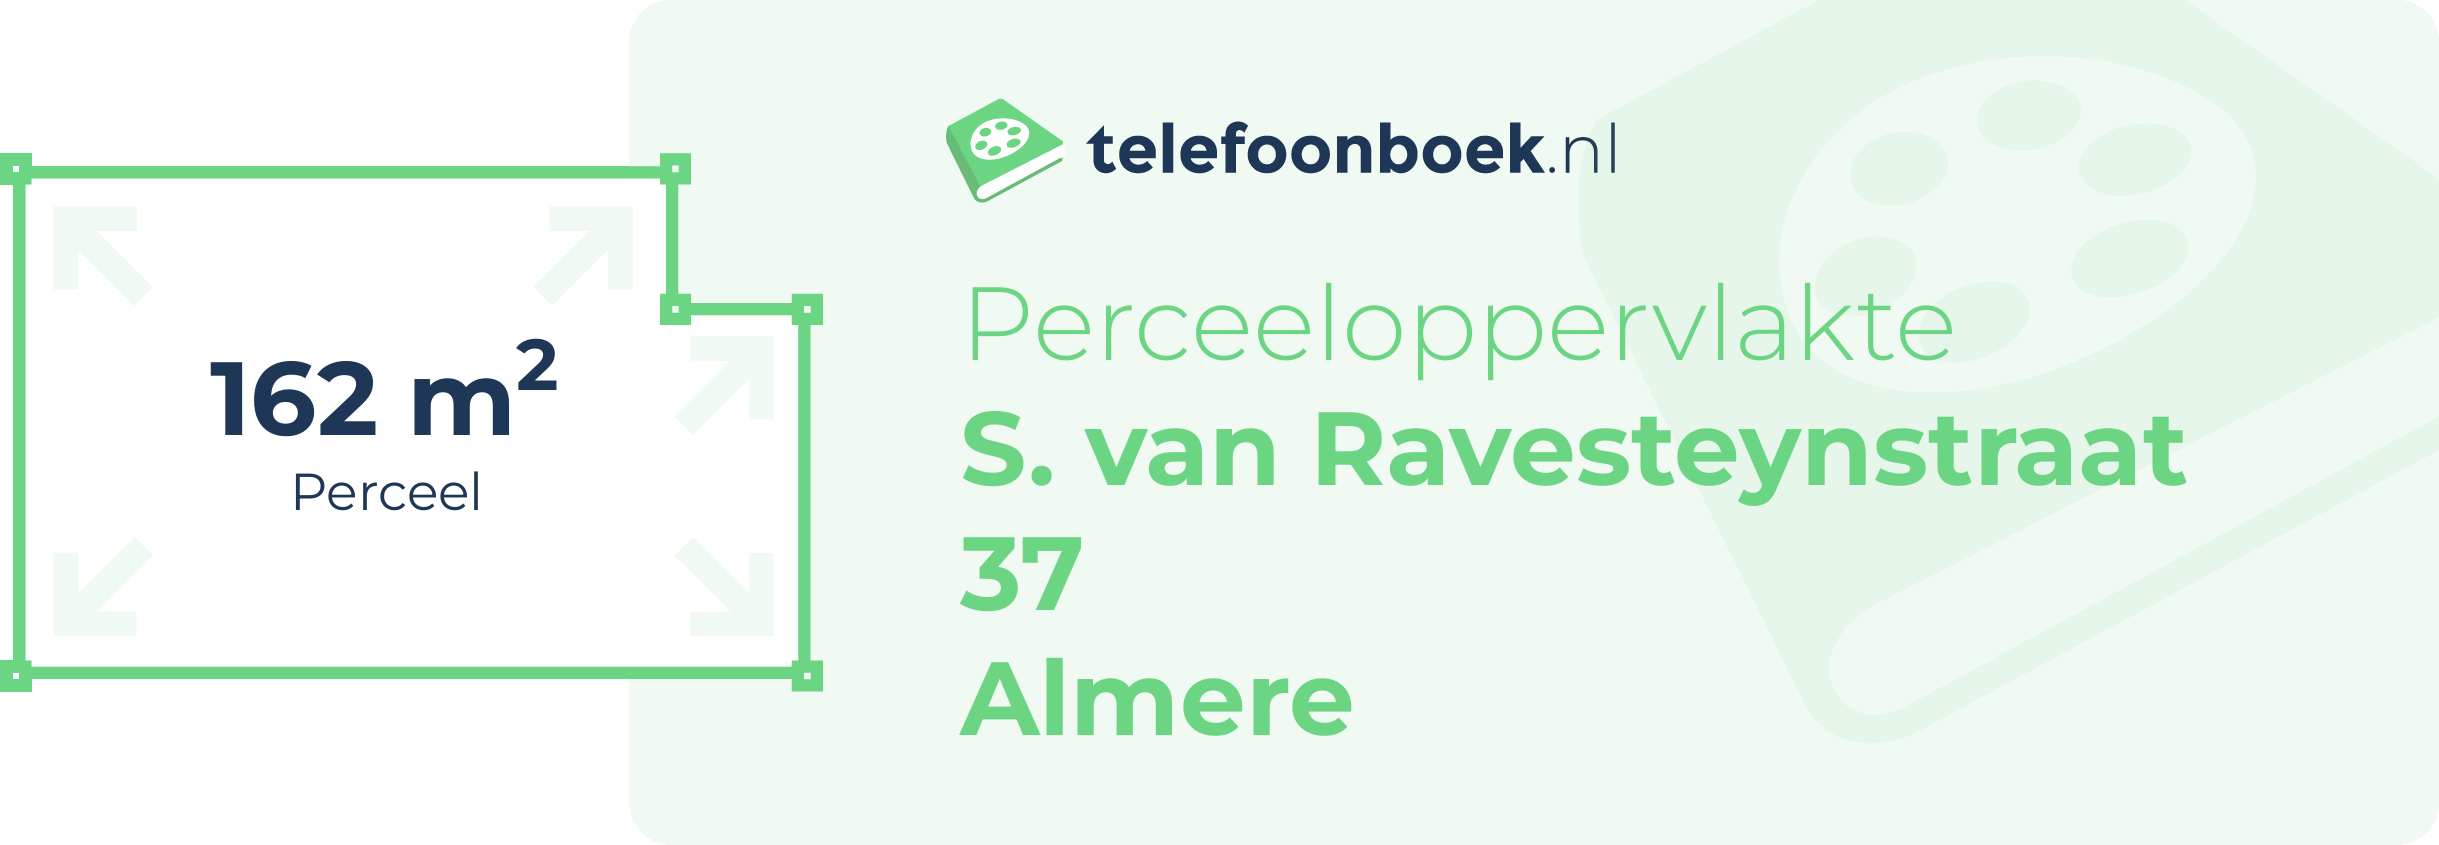 Perceeloppervlakte S. Van Ravesteynstraat 37 Almere